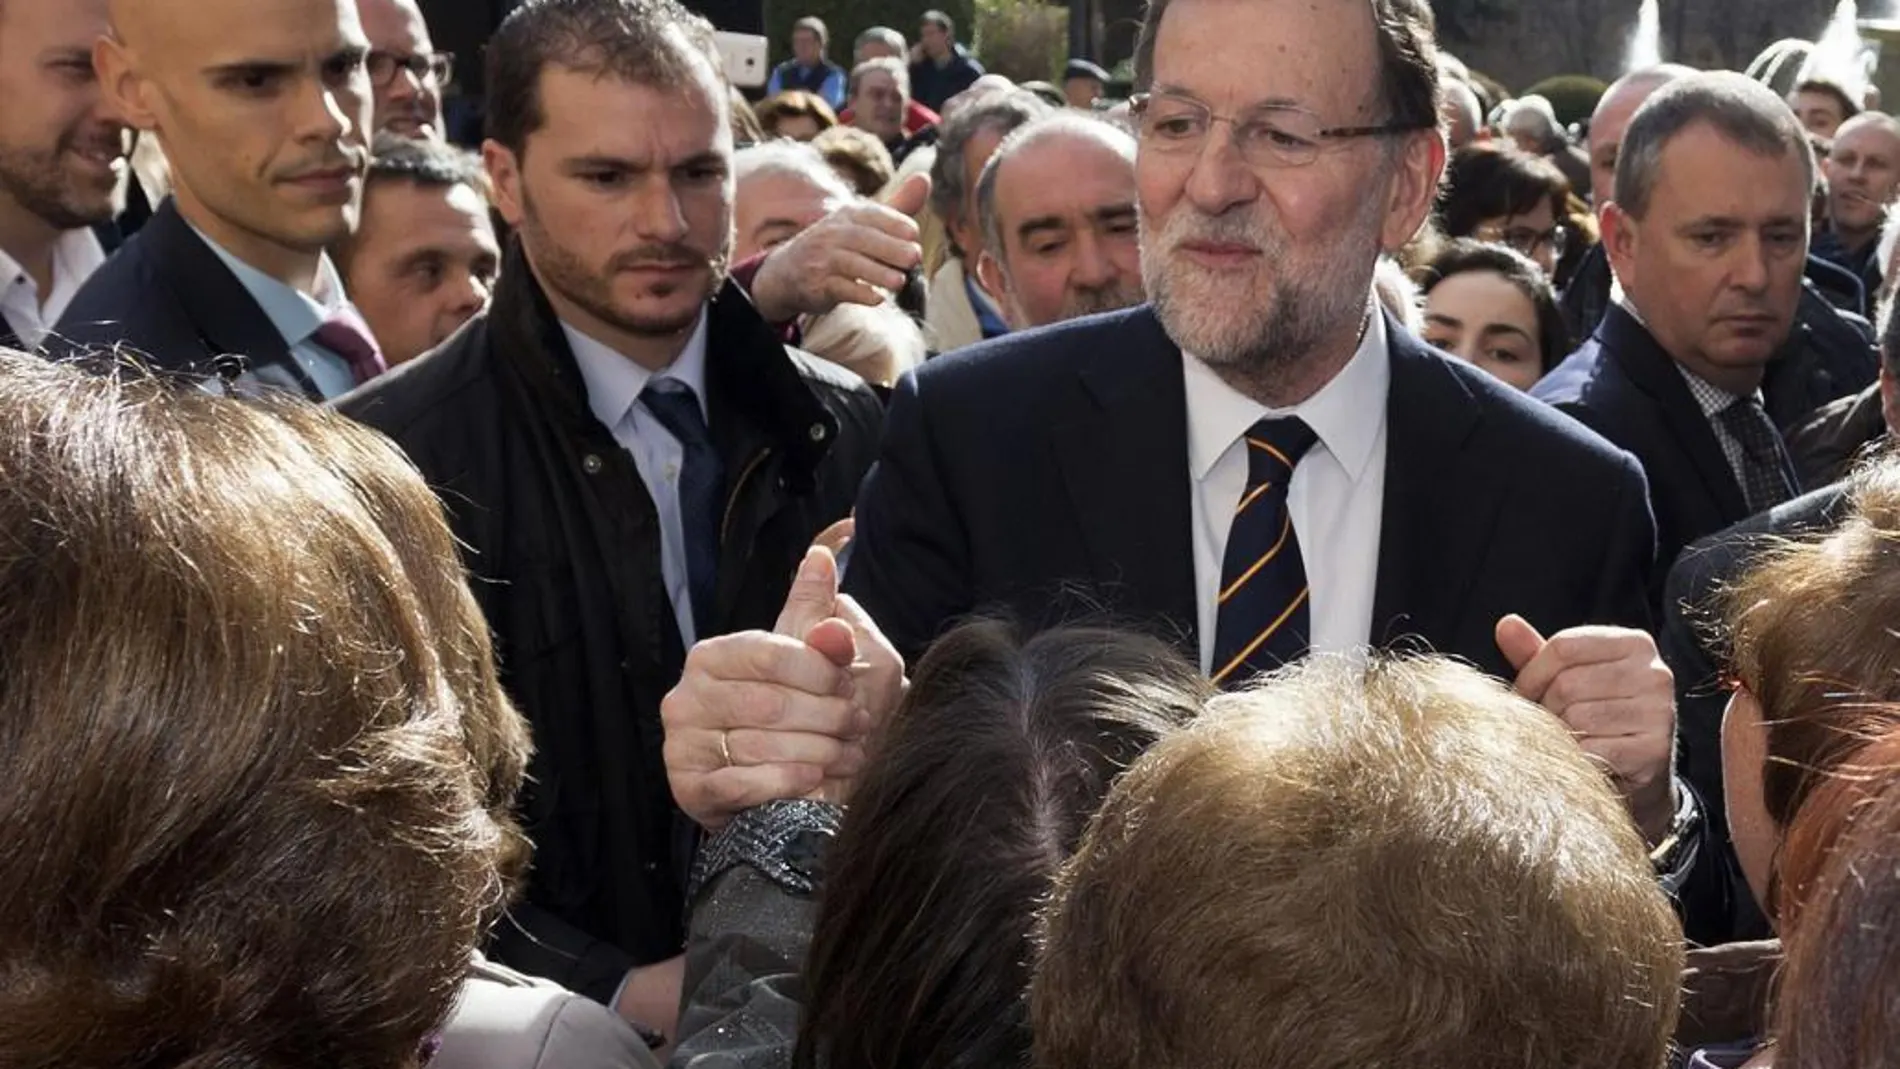 El candidato del PP a la Presidencia del Gobierno, Mariano Rajoy, saluda a los asistentes del acto de campaña celebrado hoy en Ávila